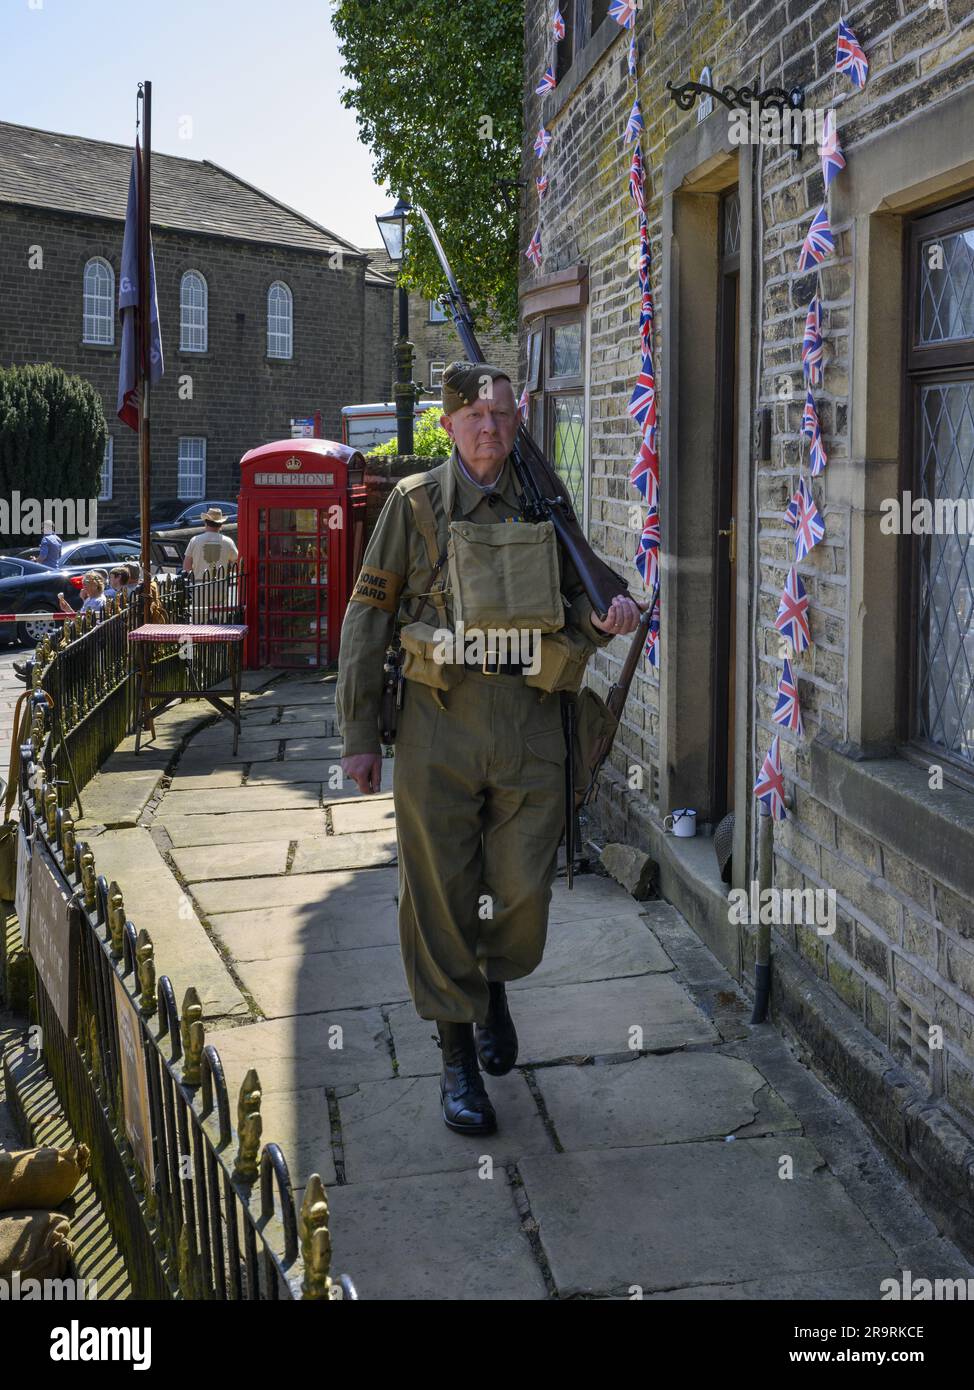 Haworth 1940's Living History Event (uomo pattuglia e guardia, costume da Dad's Army cachi della seconda guerra mondiale, kit replica maschera a gas) - West Yorkshire, Inghilterra Regno Unito. Foto Stock